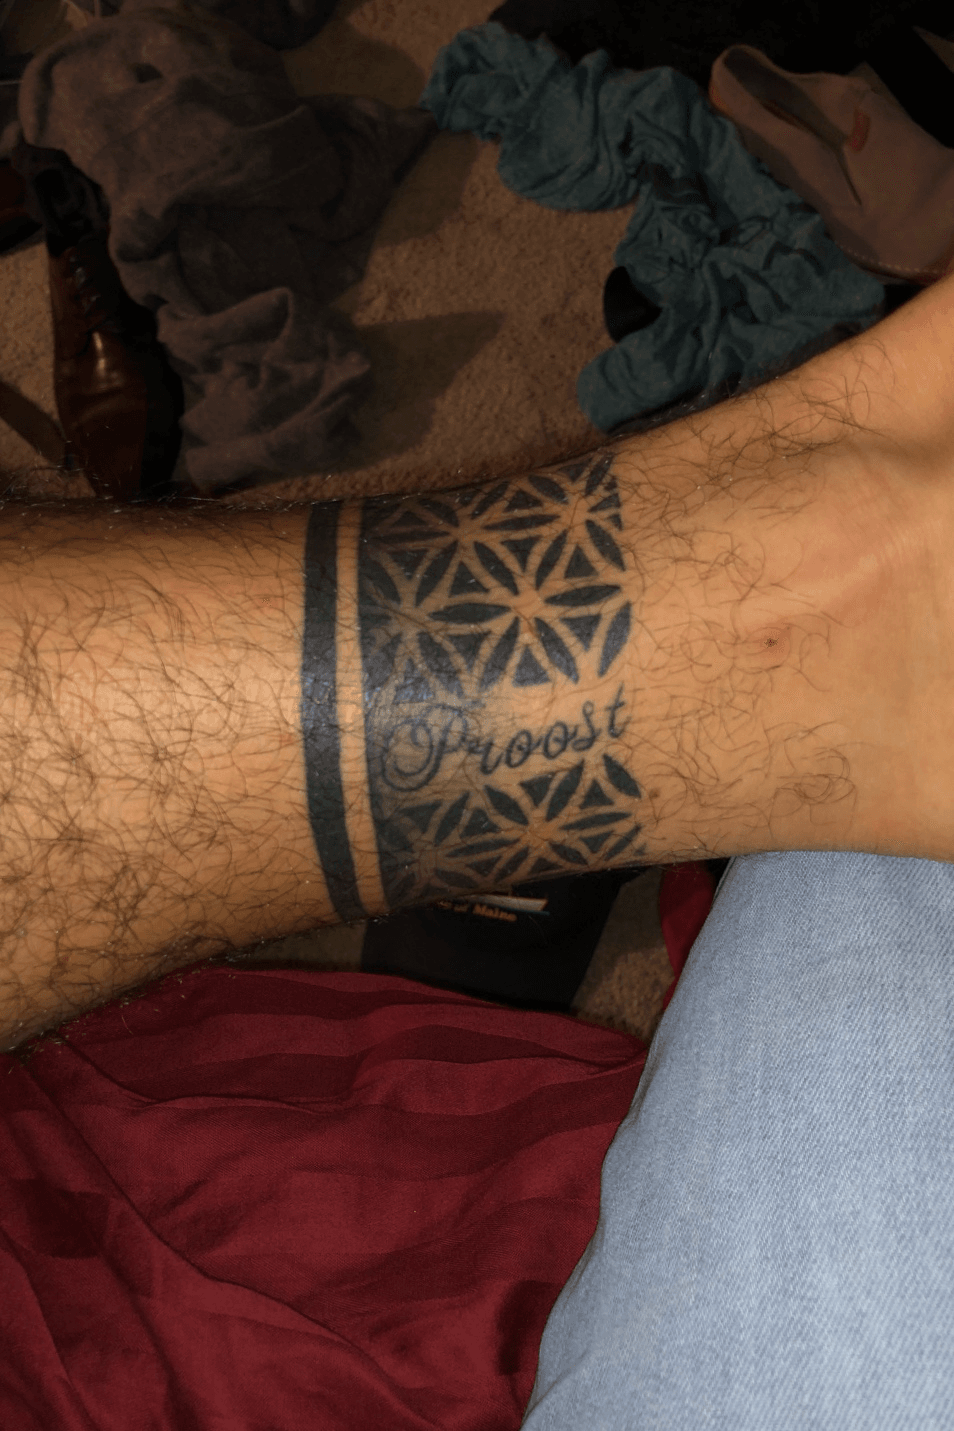 Armband Tattoo  Angel tattoo designs Arm band tattoo Polynesian tattoo